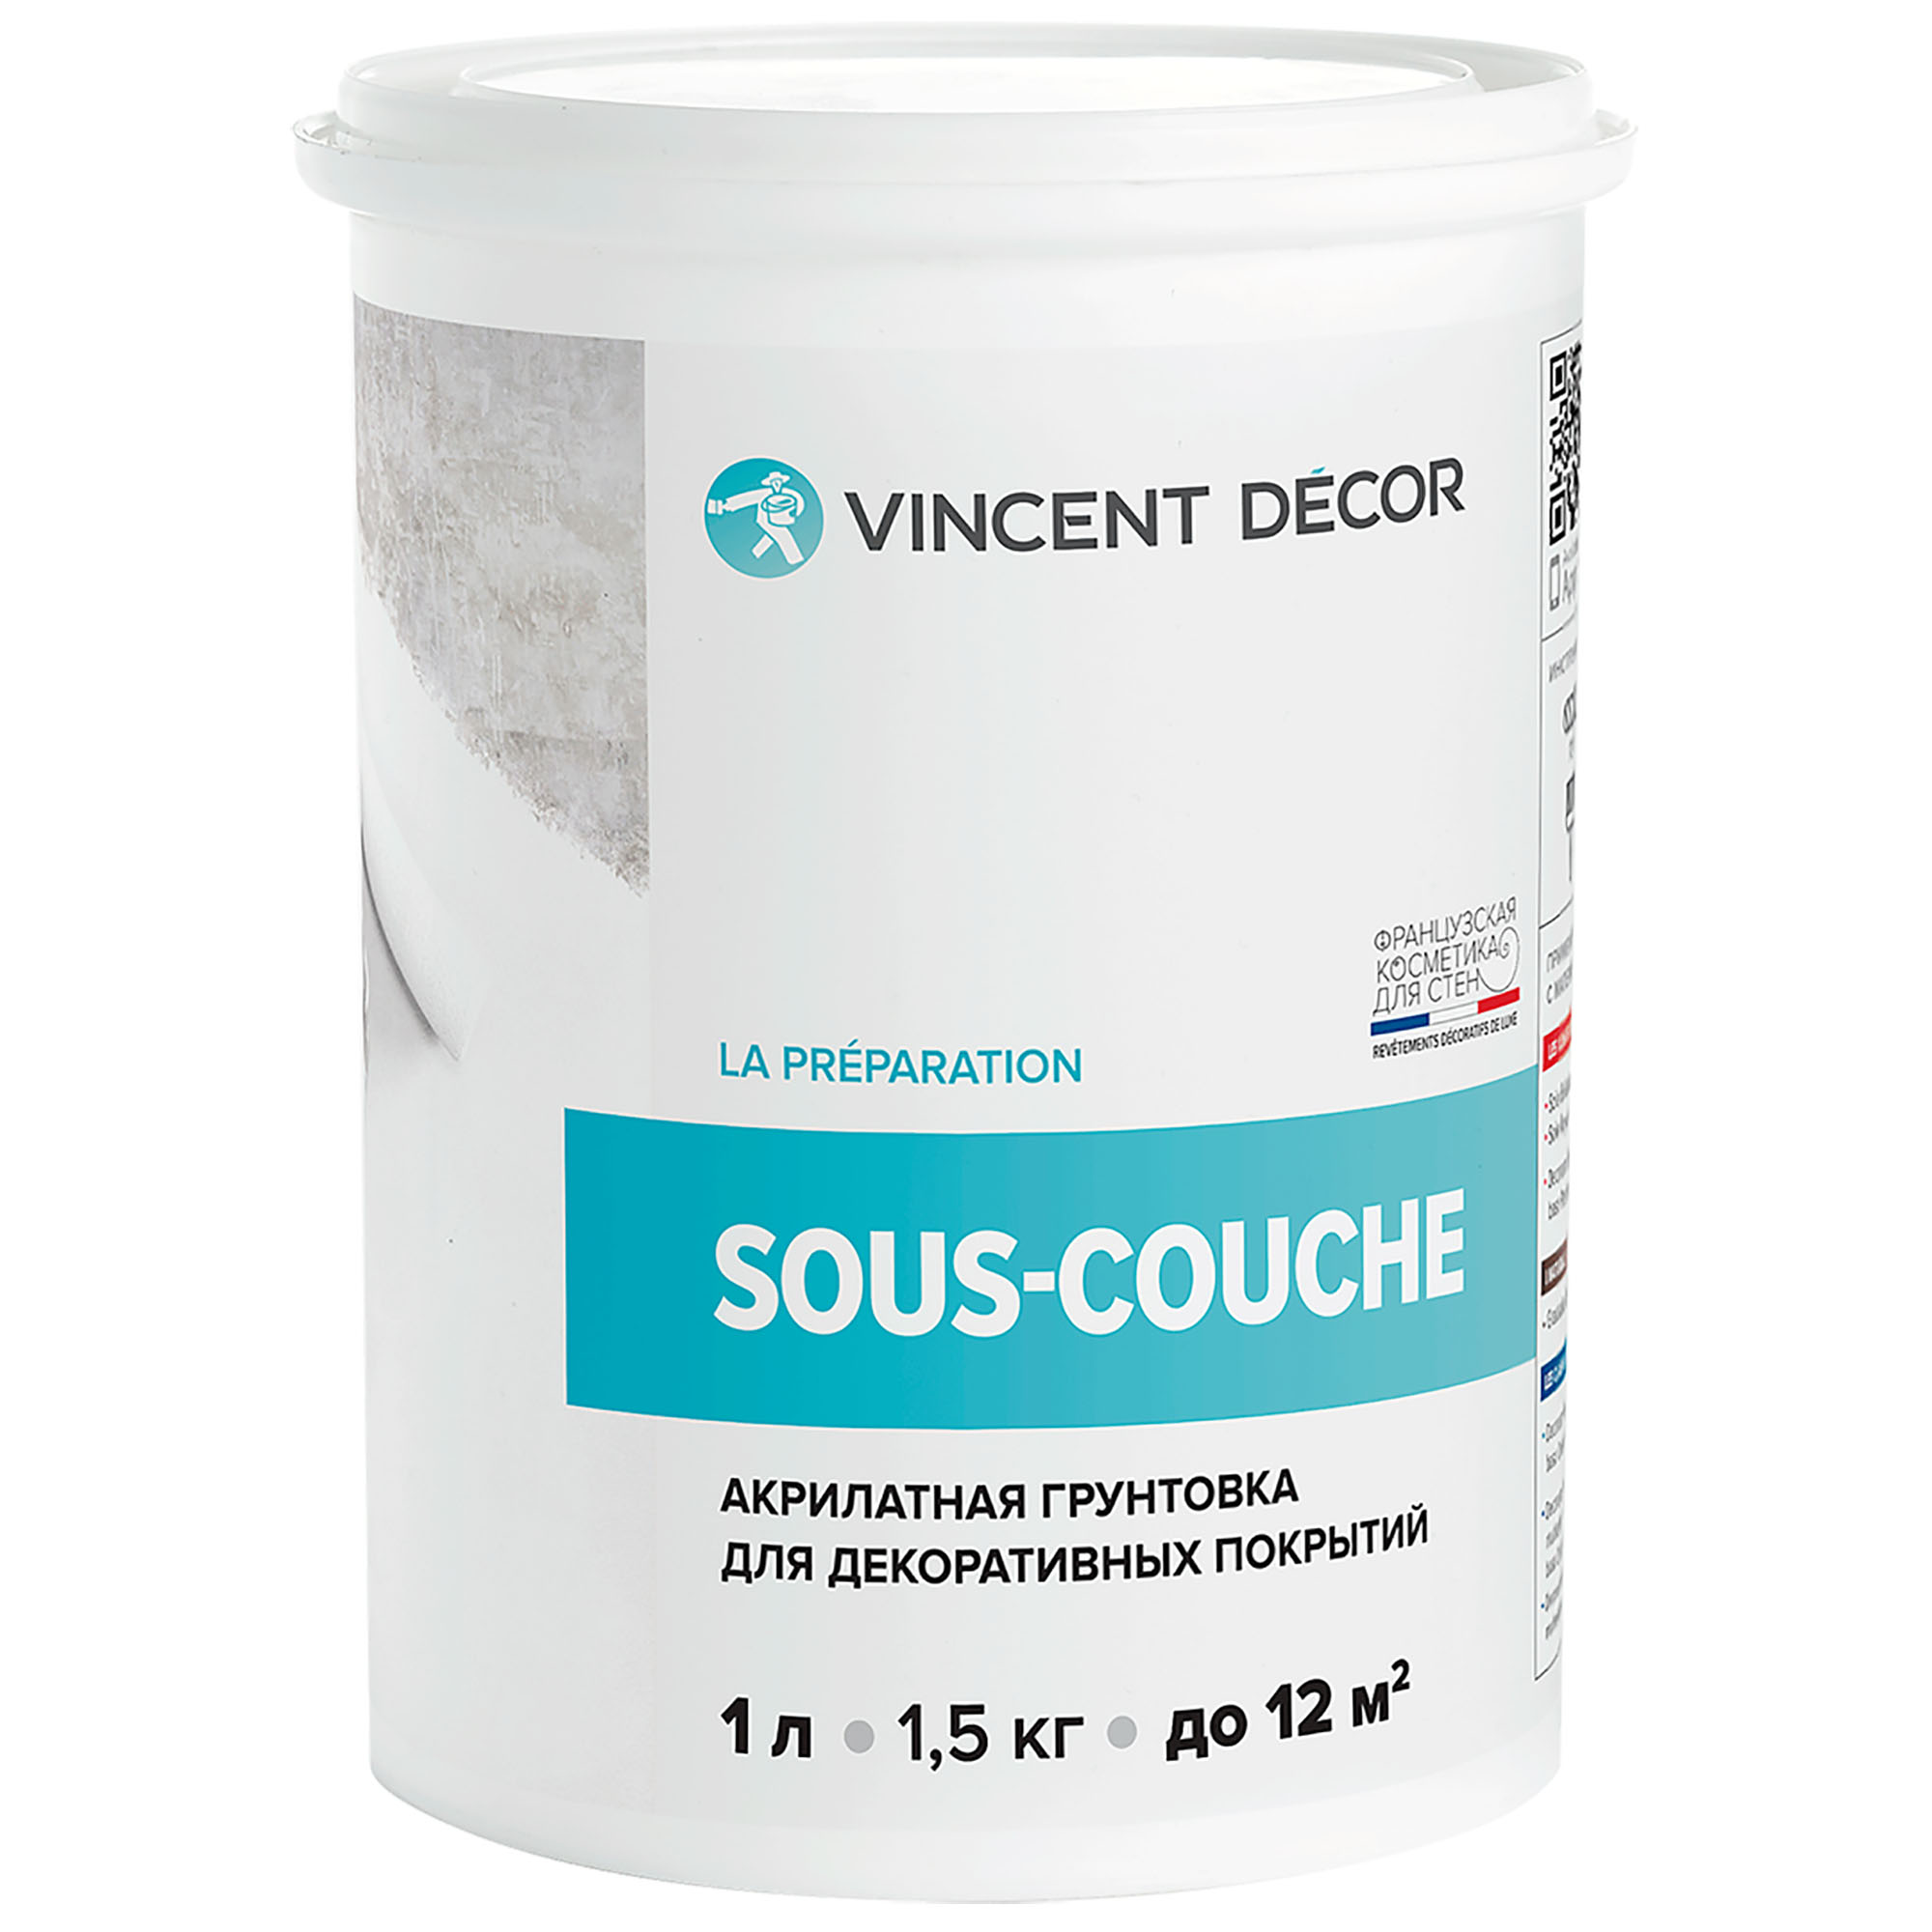 Грунтовка для декоративных покрытий Vincent Decor Sous-couche 1 л грунтовка vincent g 2 конт4 кг акрилатная 096 011